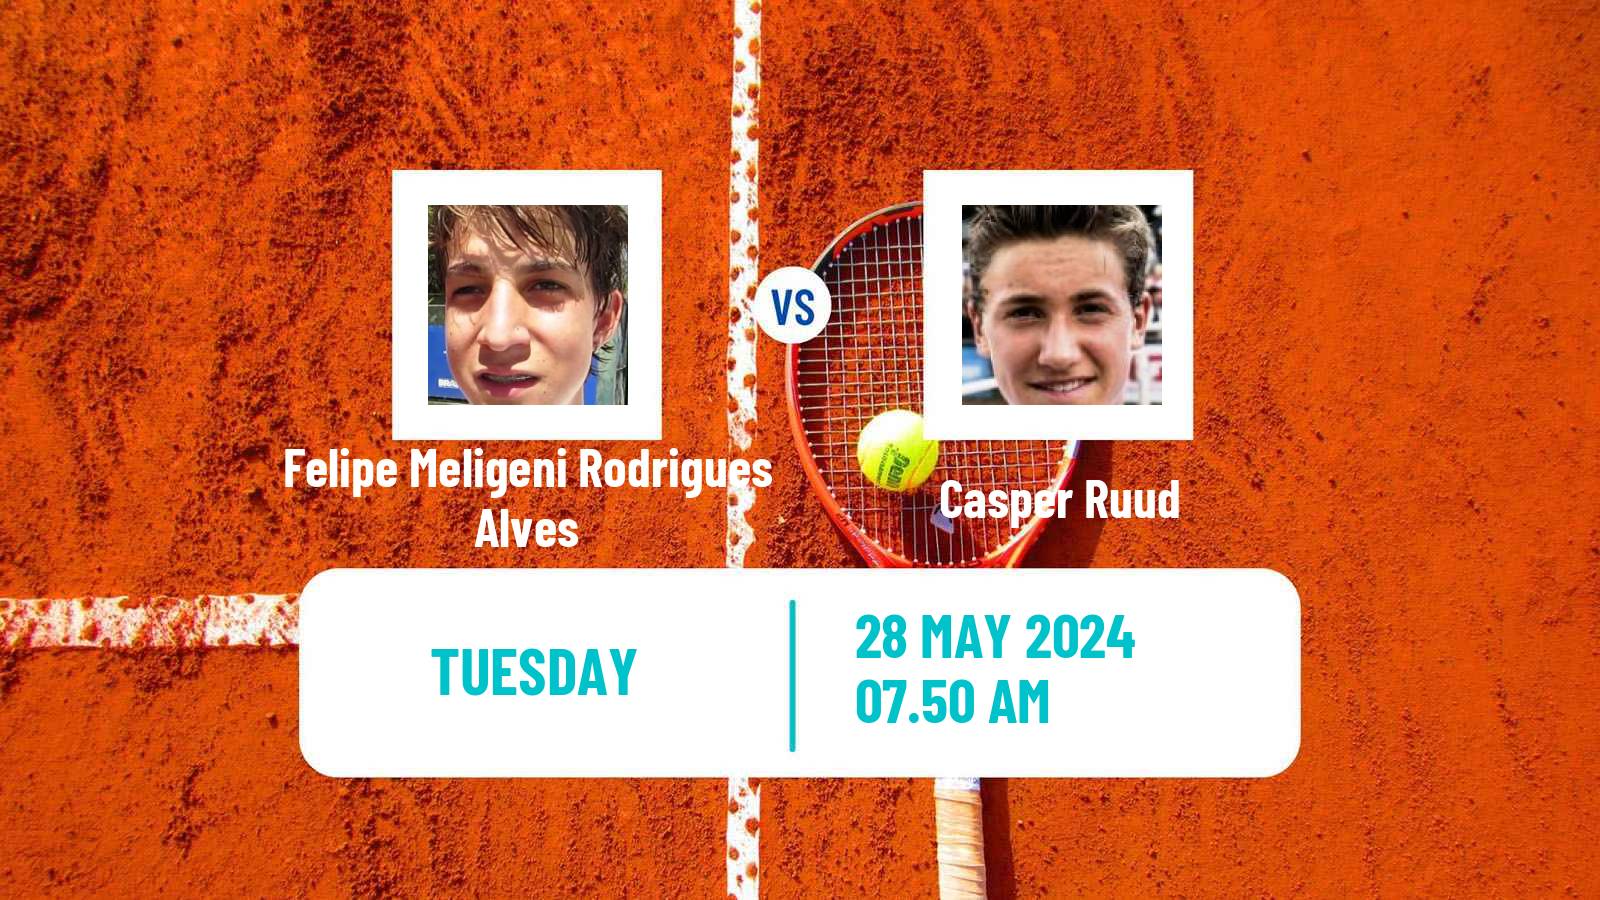 Tennis ATP Roland Garros Felipe Meligeni Rodrigues Alves - Casper Ruud